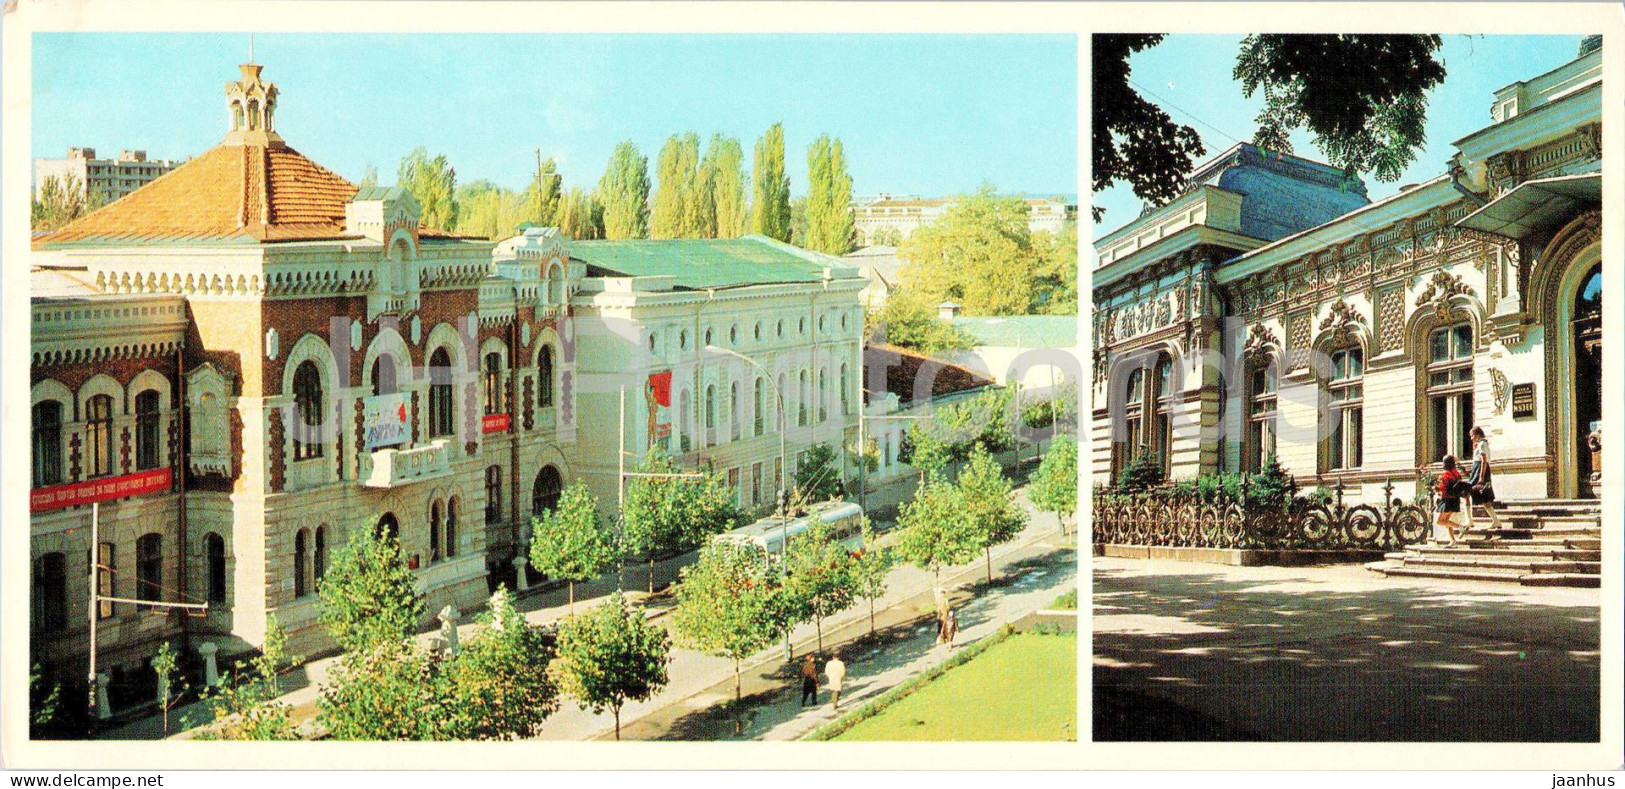 Chisinau - Museum Of History Of Communist Party - The State Art Museum - 1980 - Moldova USSR - Unused - Moldova